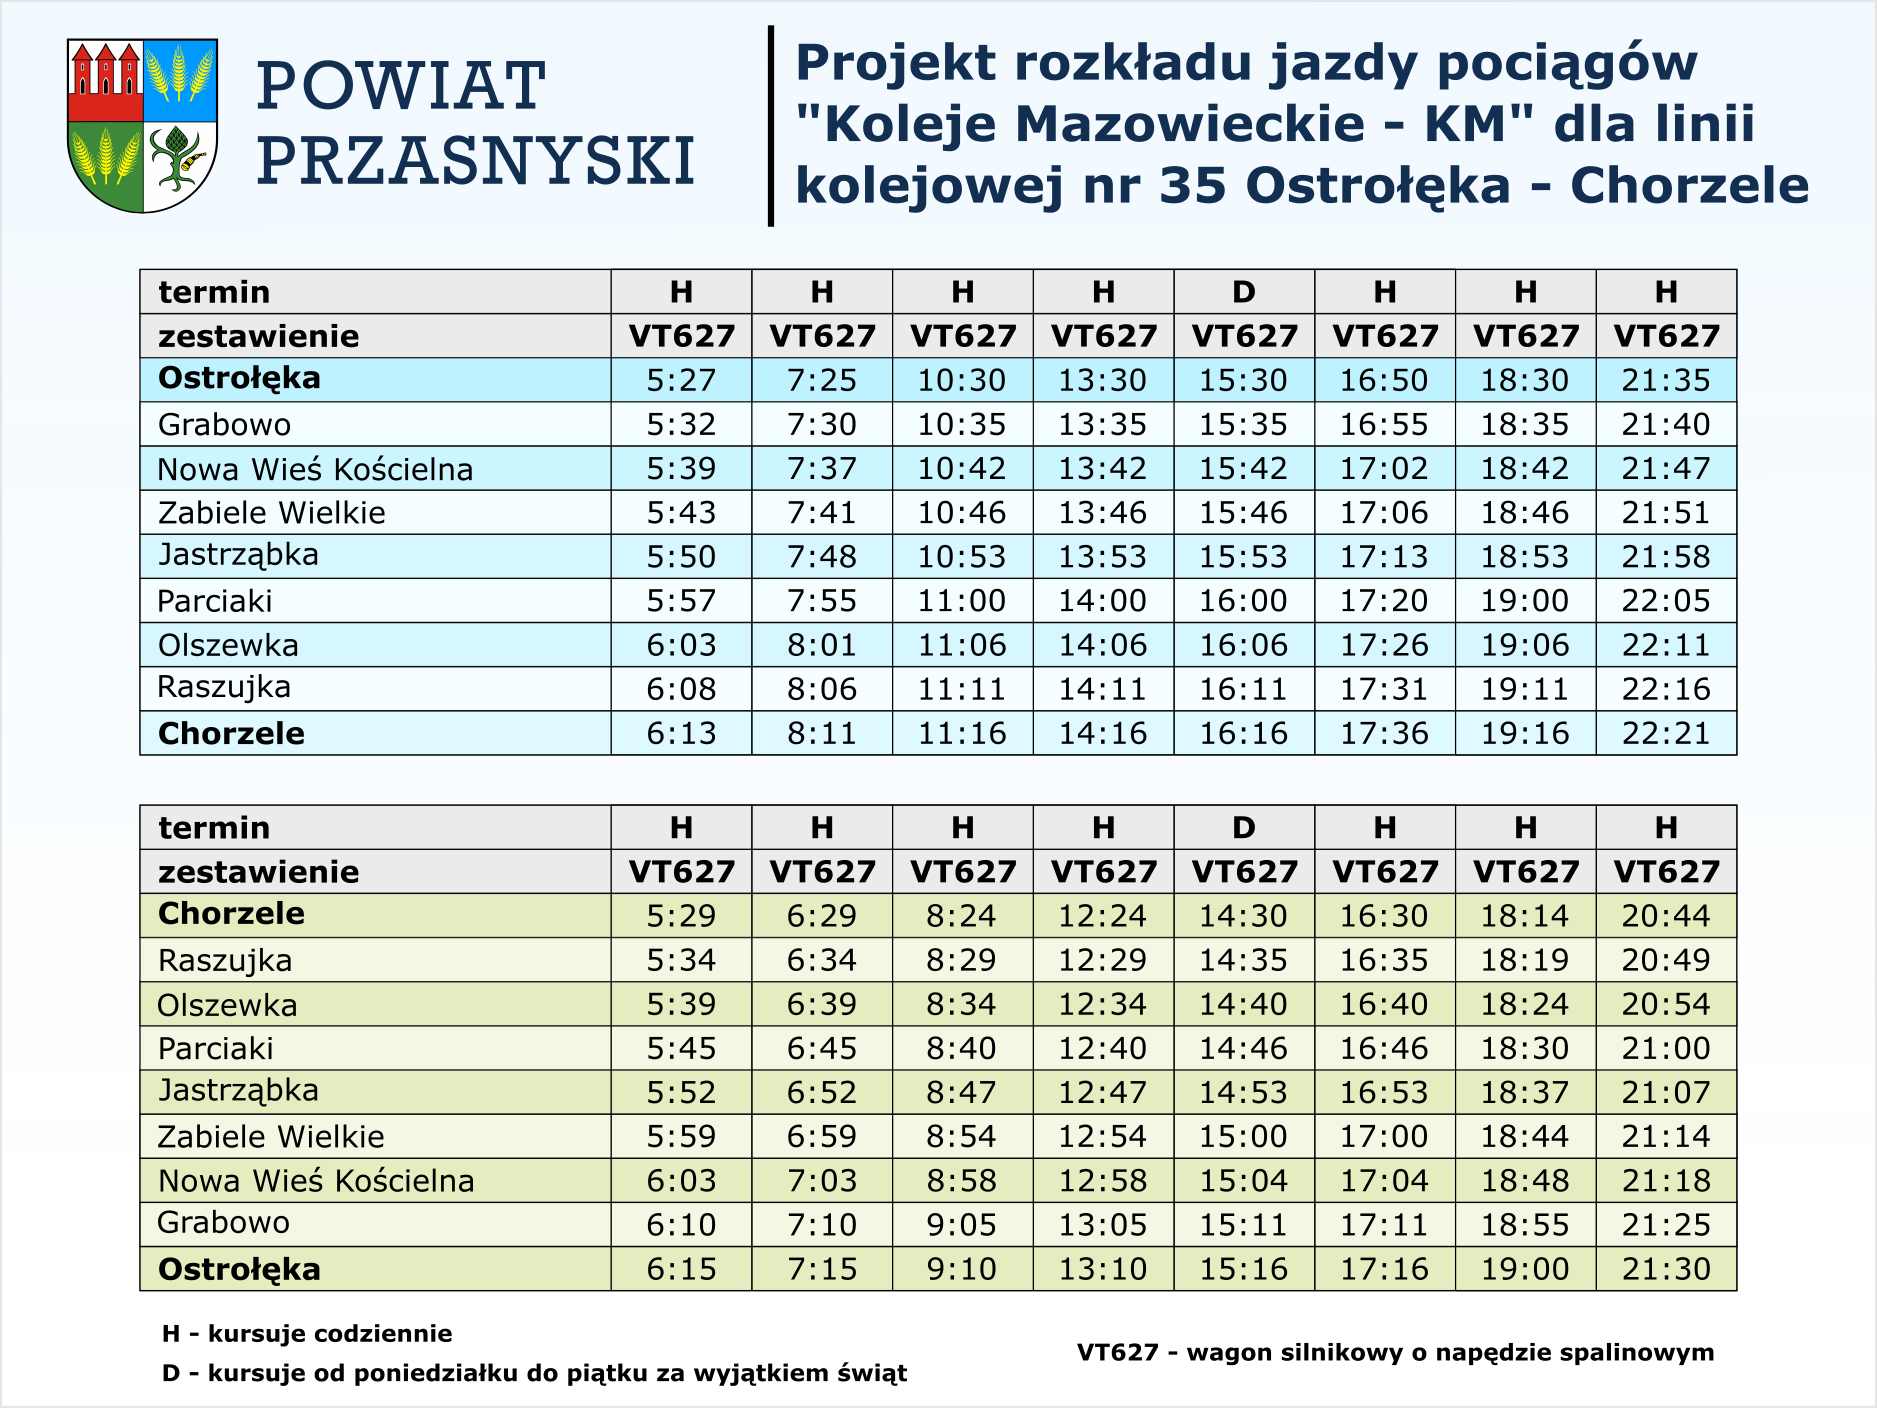 Projekt proponowanego rozkładu jazdy linii kolejowej nr 35 Ostrołęka-Chorzele. Treść w artykule.